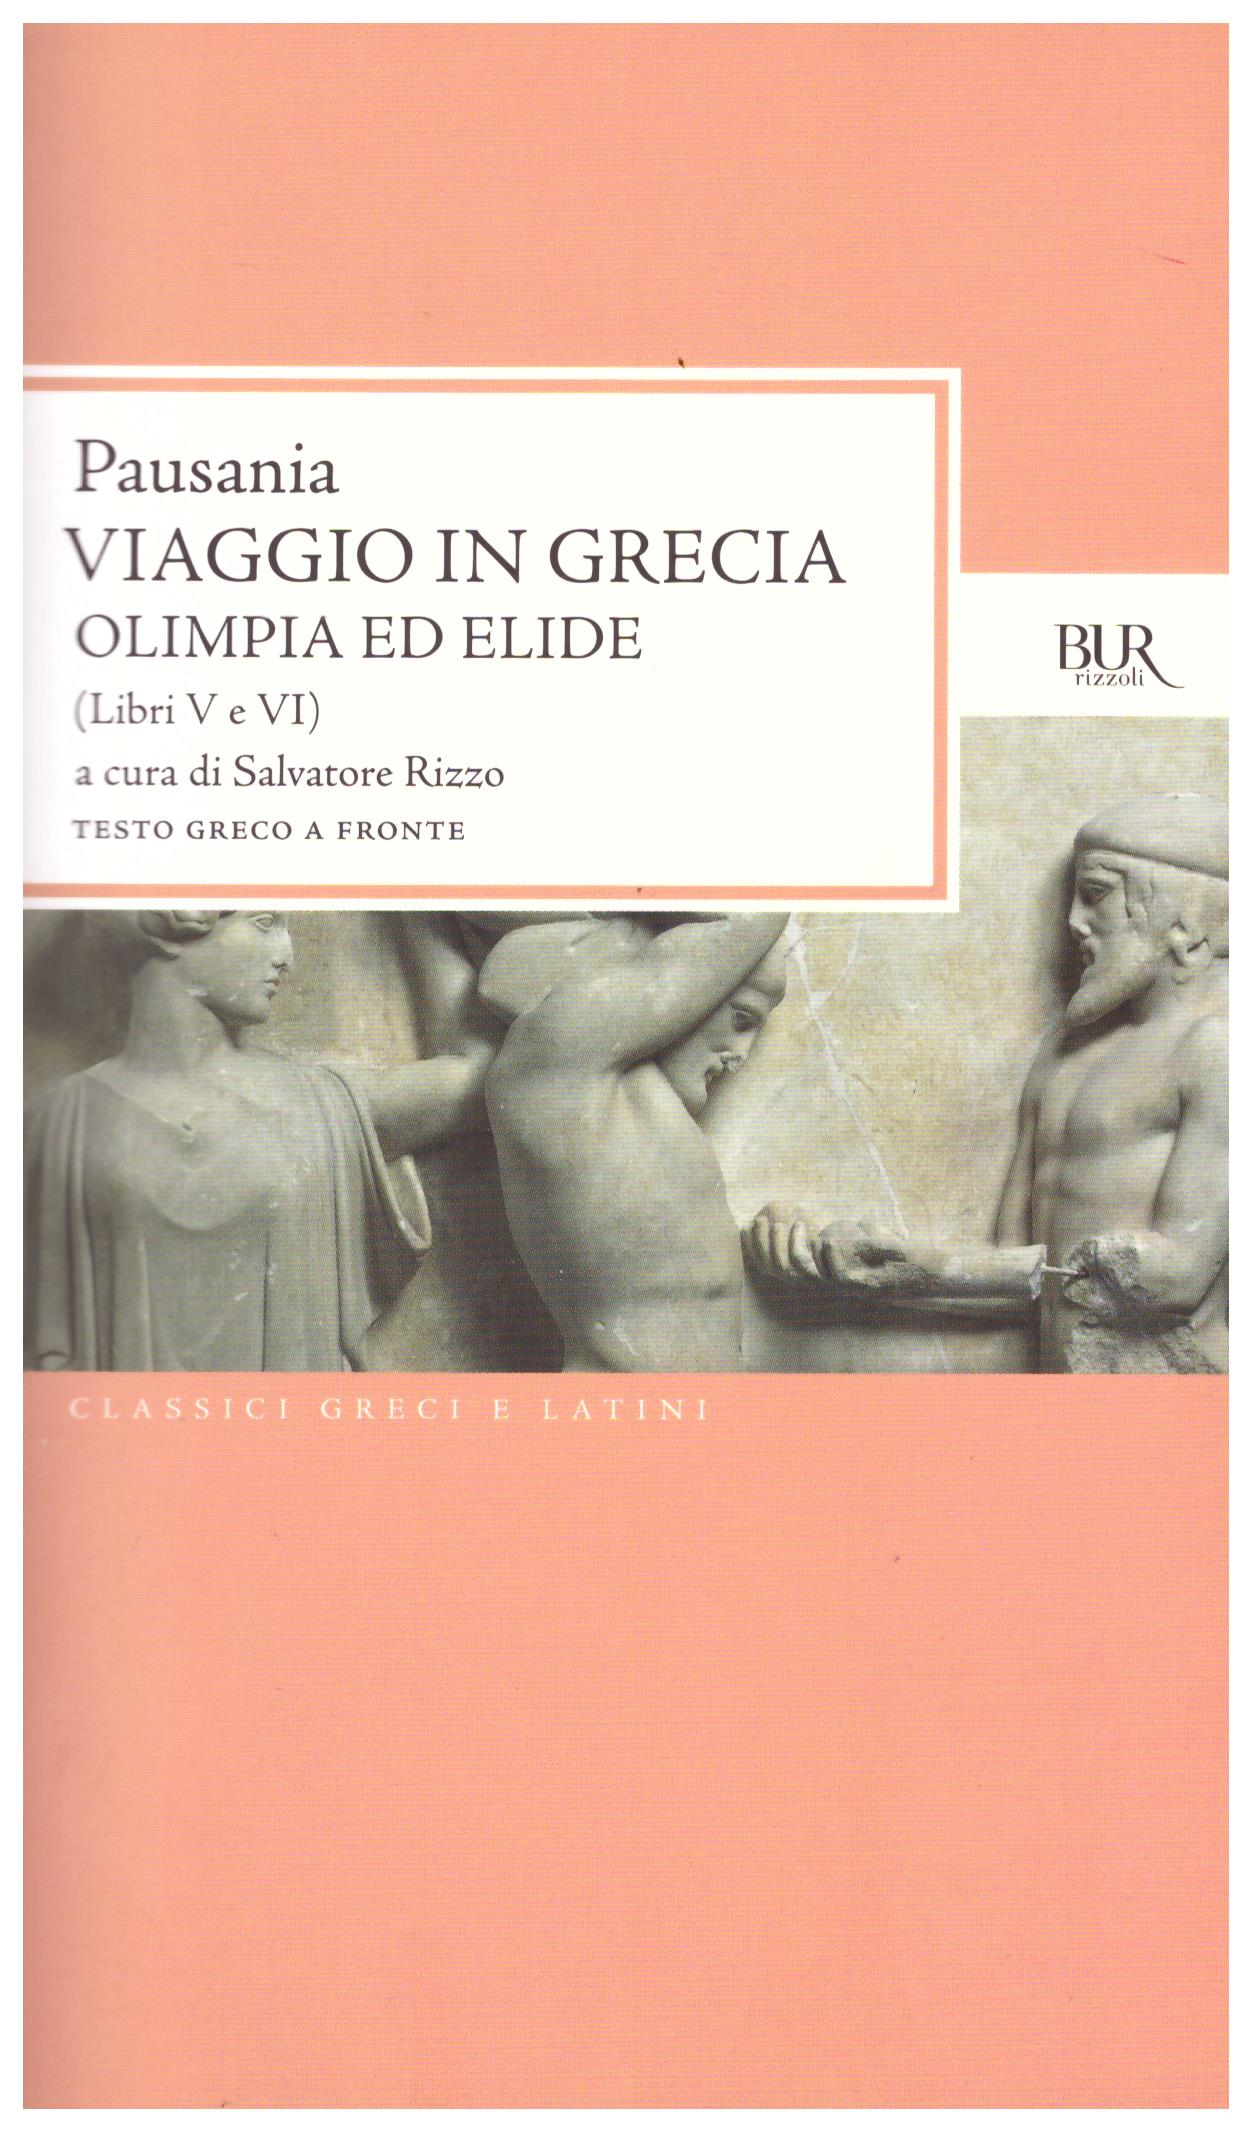 Titolo: Viaggio in Grecia Olimpia ed Elide-libri V e VI Autore: Pausania Editore: Bur, 2010